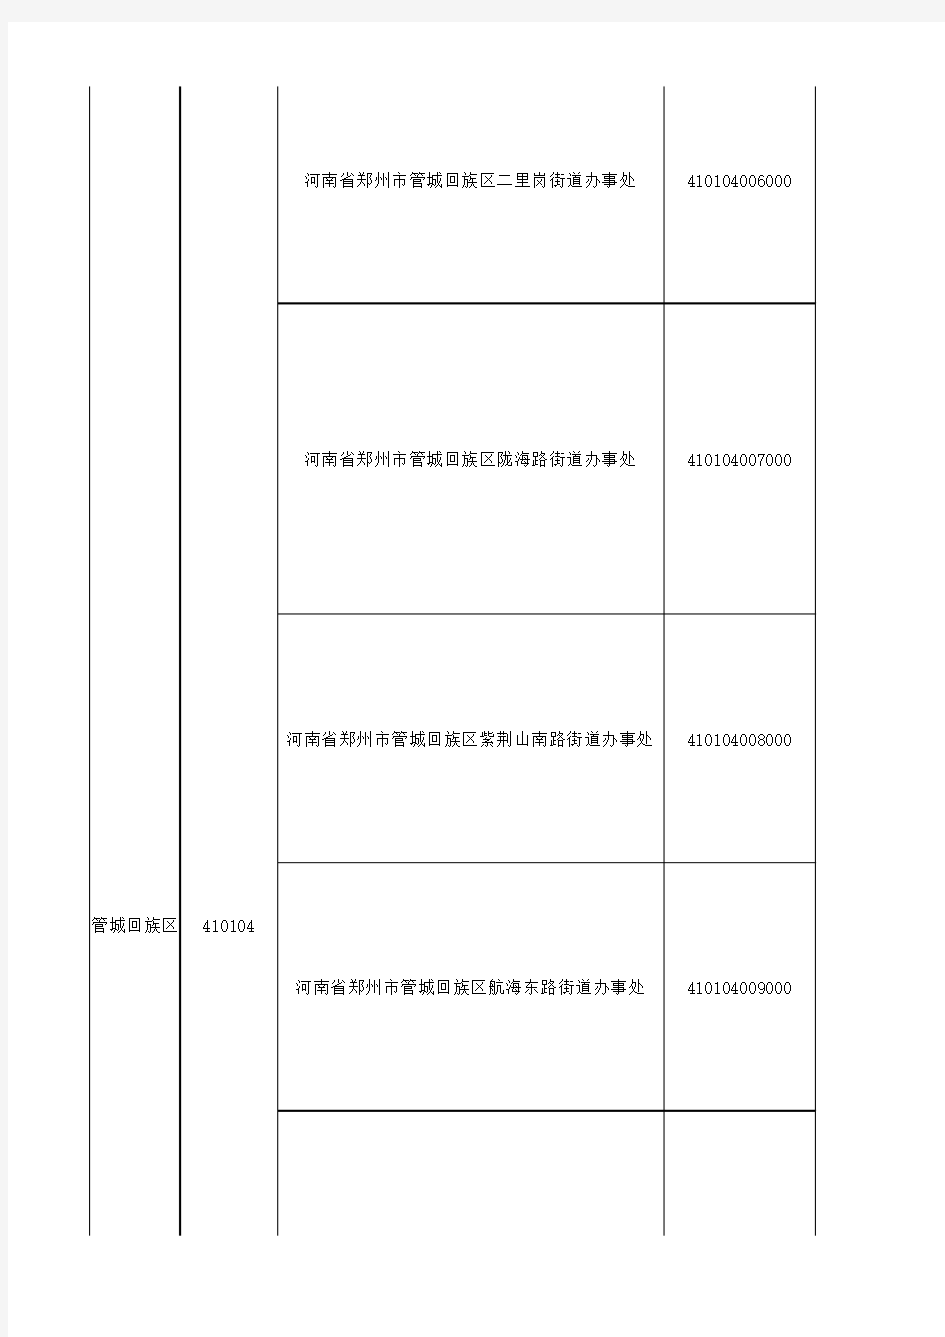 郑州市行政区域划分表